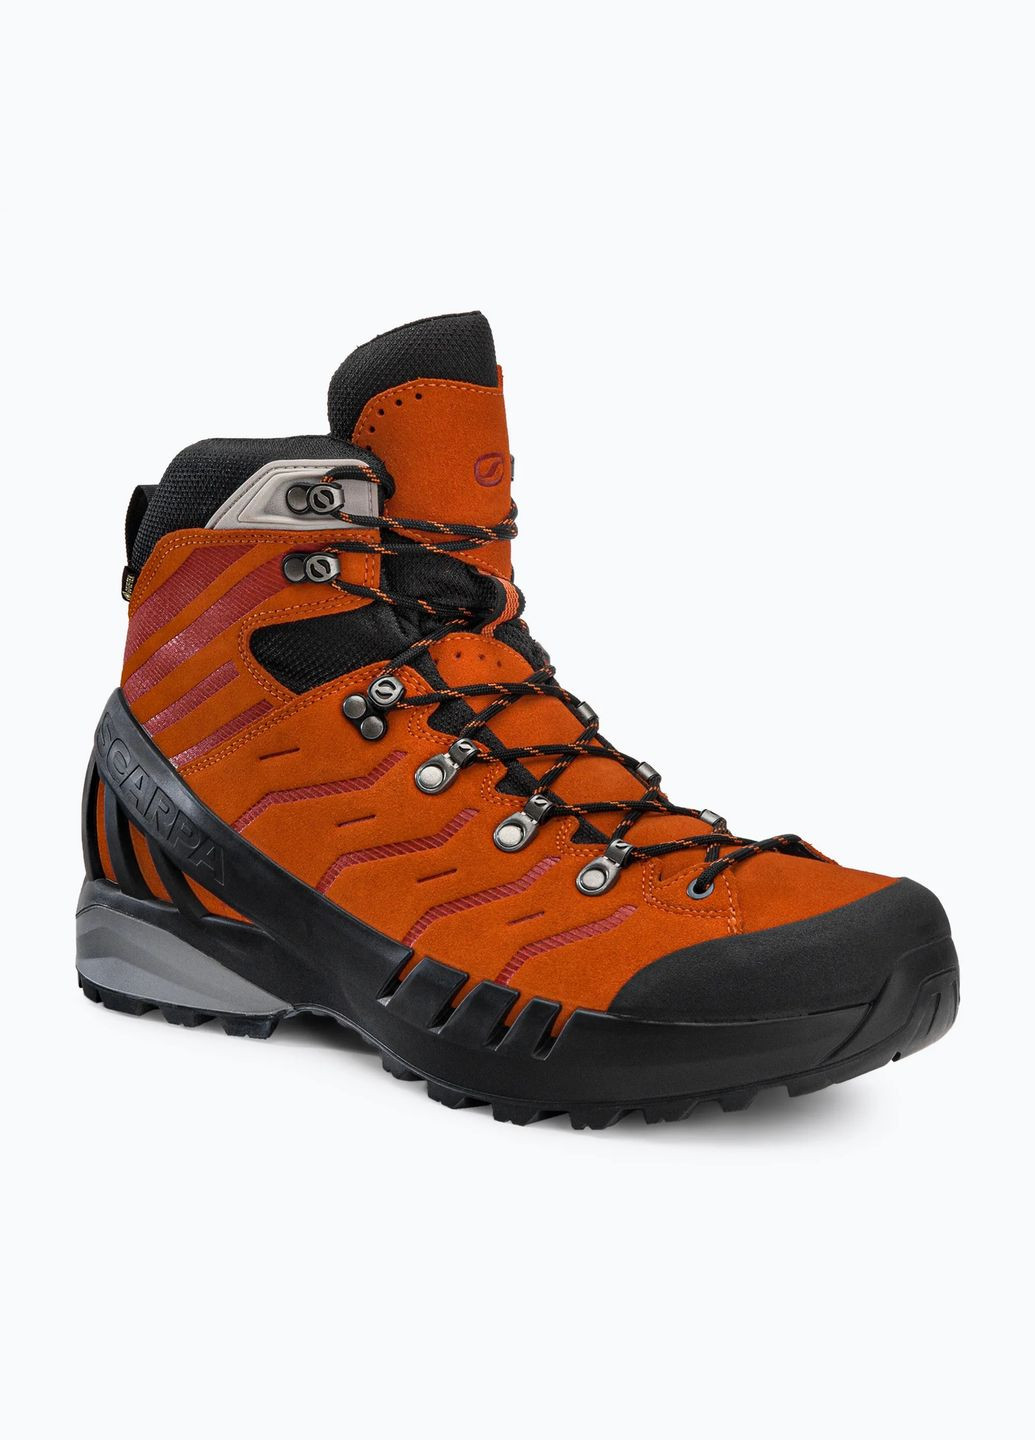 Цветные осенние ботинки cyclone-s gtx серый-оранжевый Scarpa